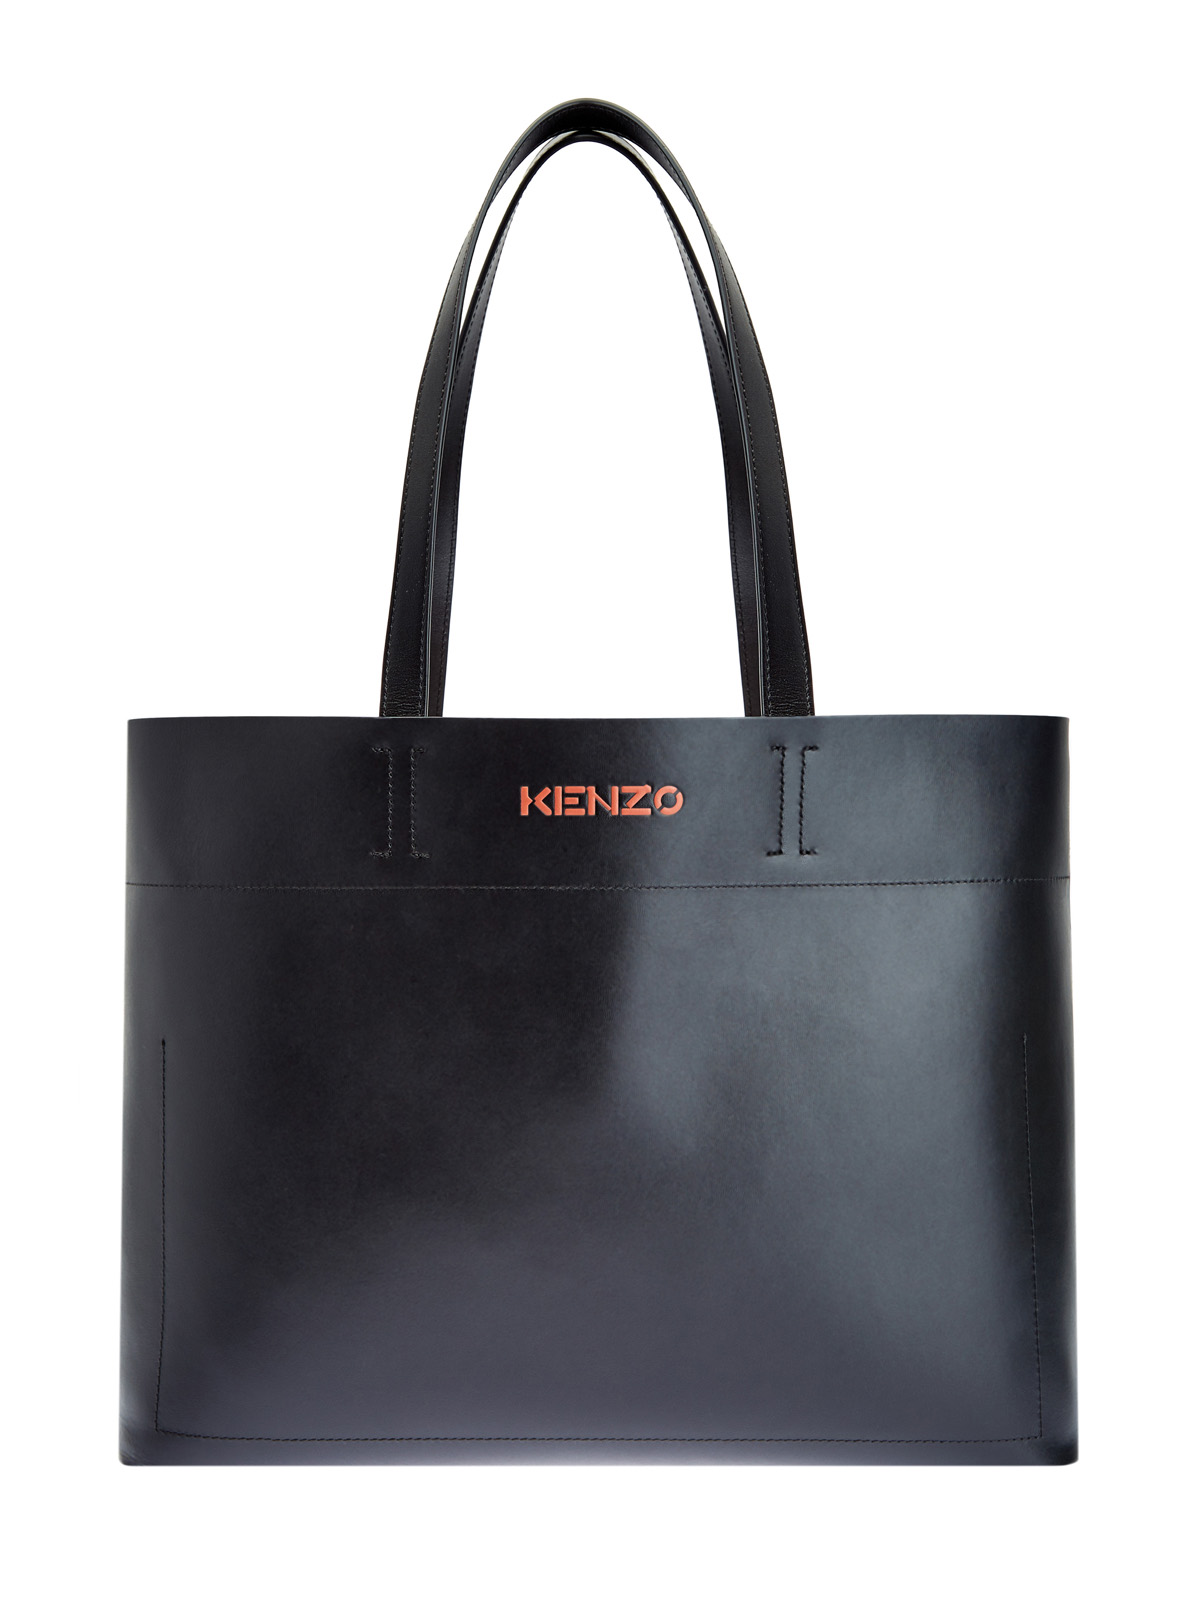 Кожаная сумка-тоут Cadet с объемным логотипом KENZO, цвет черный, размер 6;8;7.5;9 - фото 1